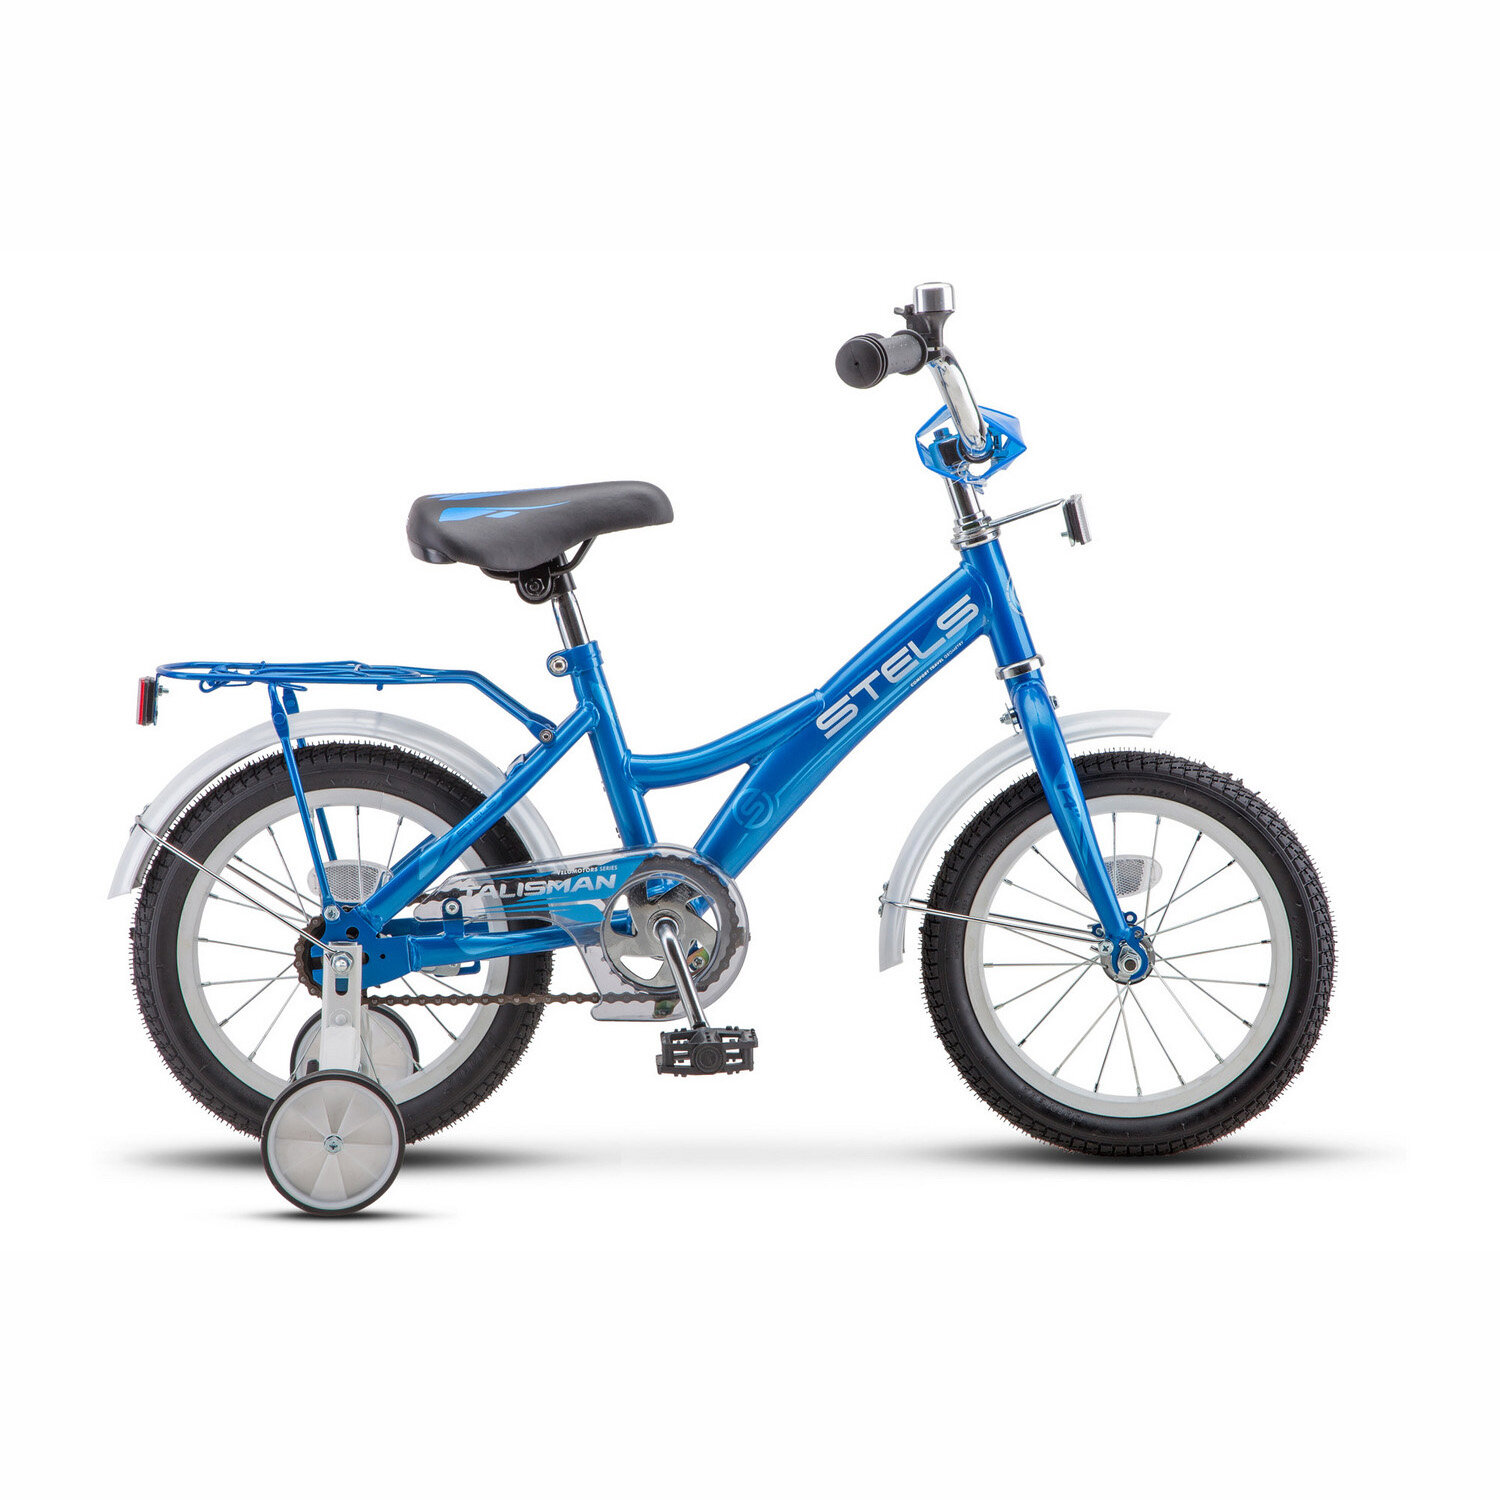 Городской велосипед STELS Talisman 14 Z010 (2018) синий 9.5" (требует финальной сборки)